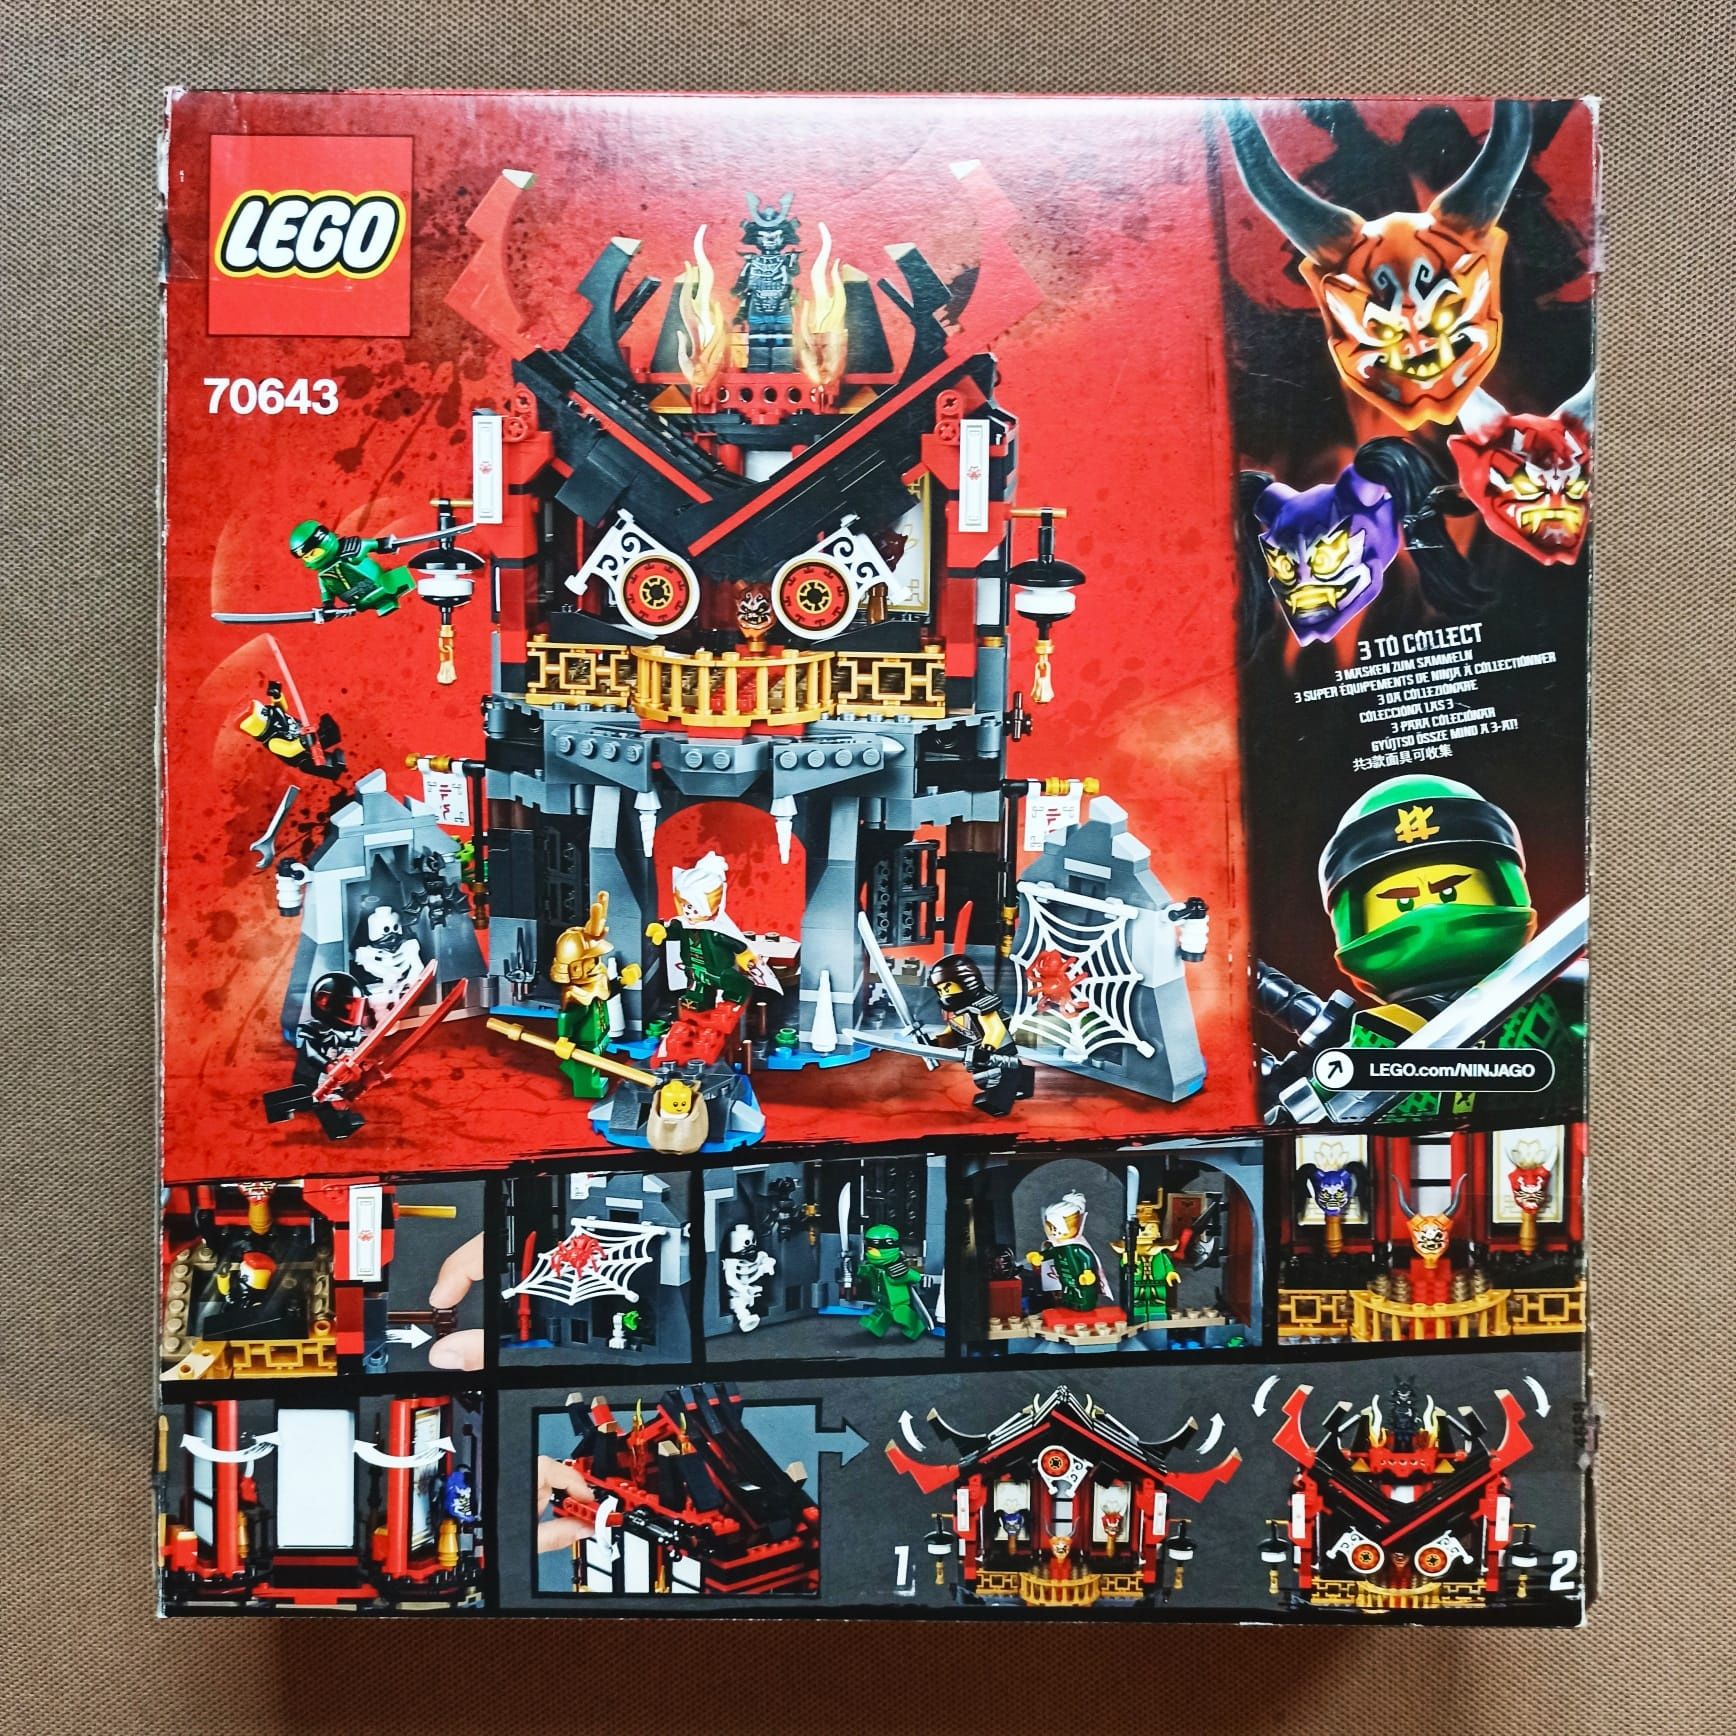 Zestaw Lego 70643 świątynia wskrzeszenia 100% kompletny